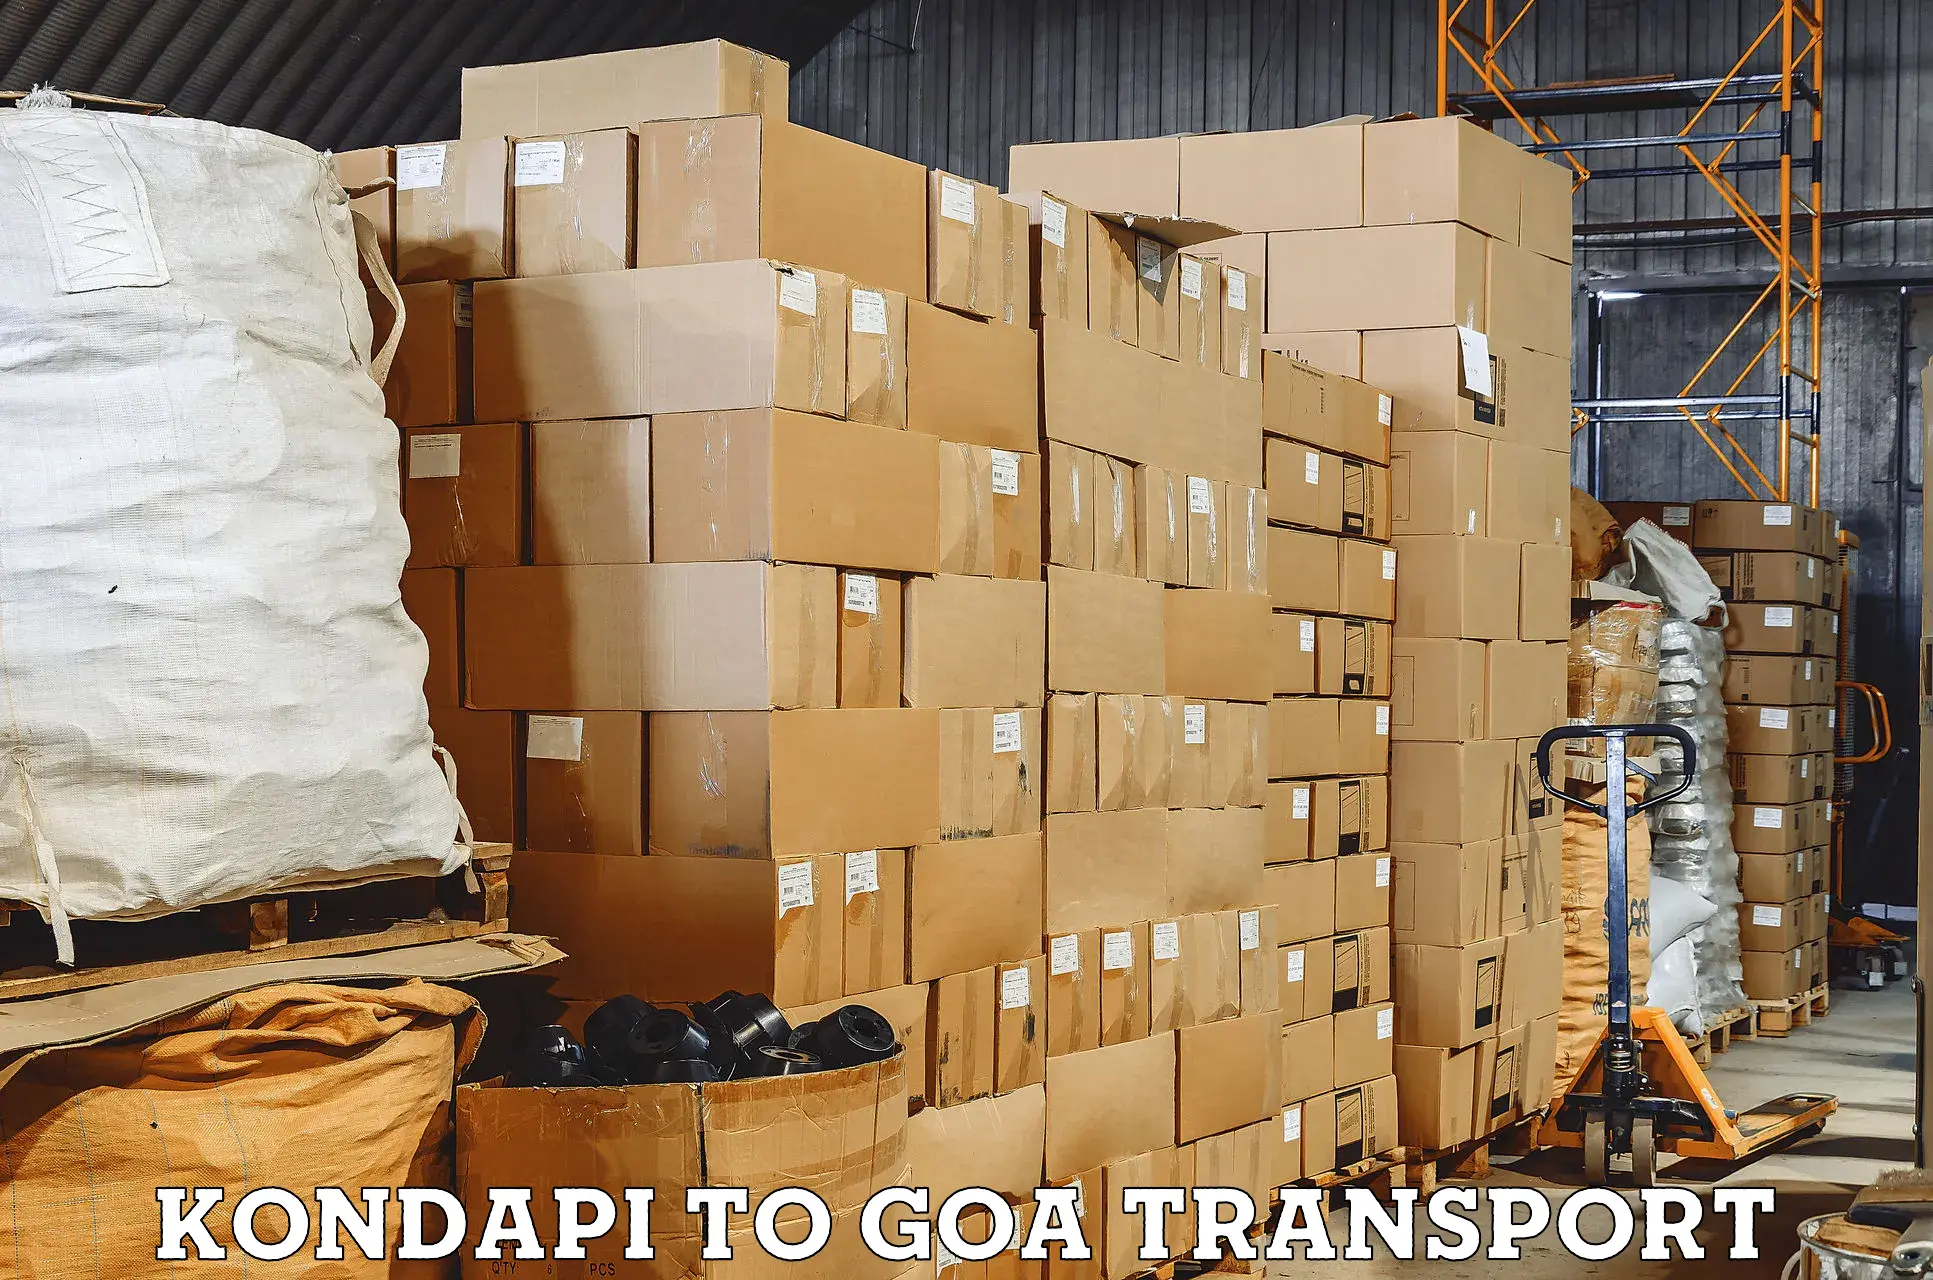 Air freight transport services Kondapi to Ponda